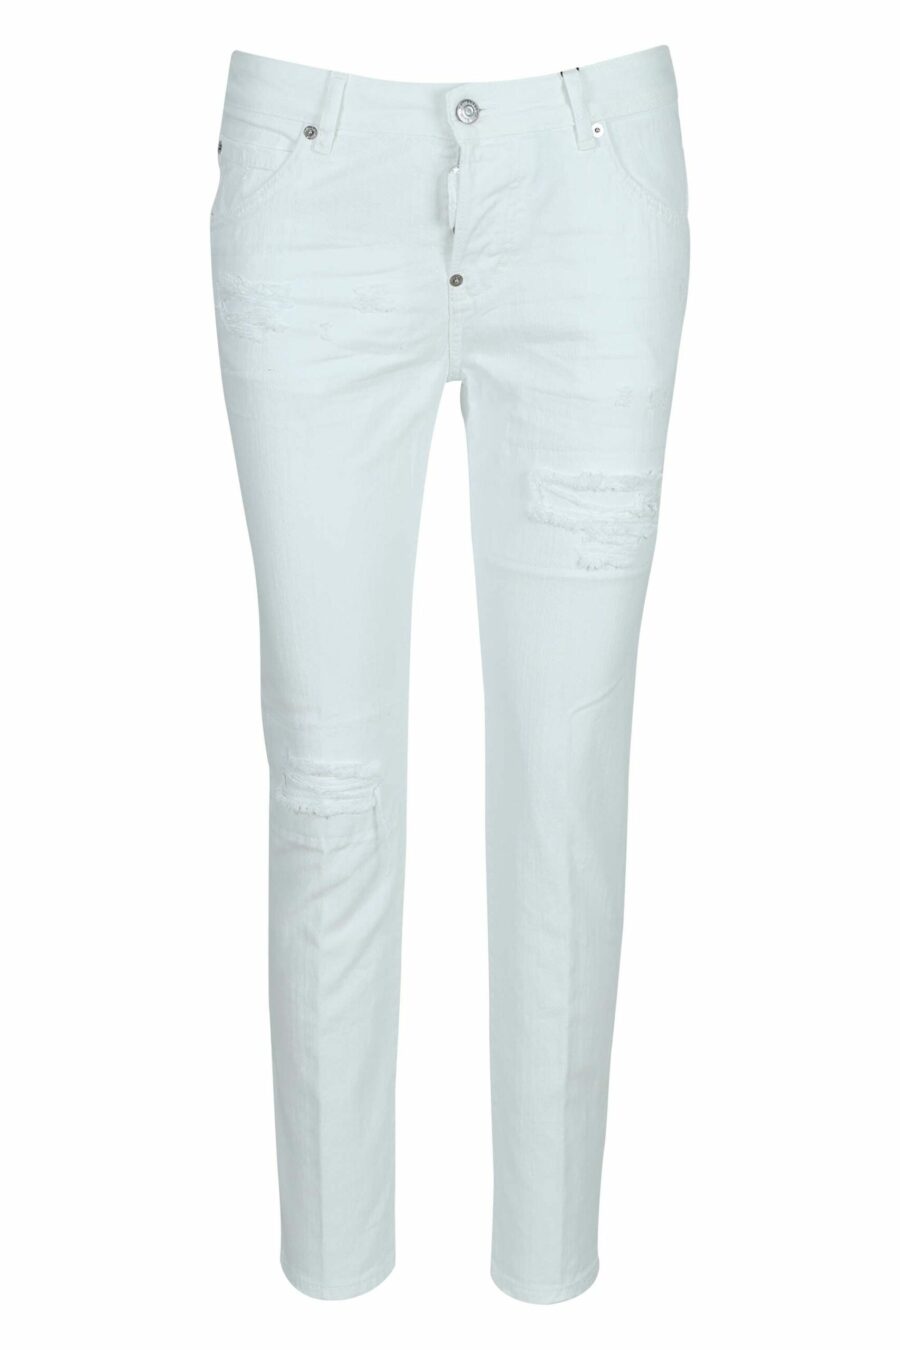 Weiße "cool girl jean" Jeans - 8054148427689 skaliert